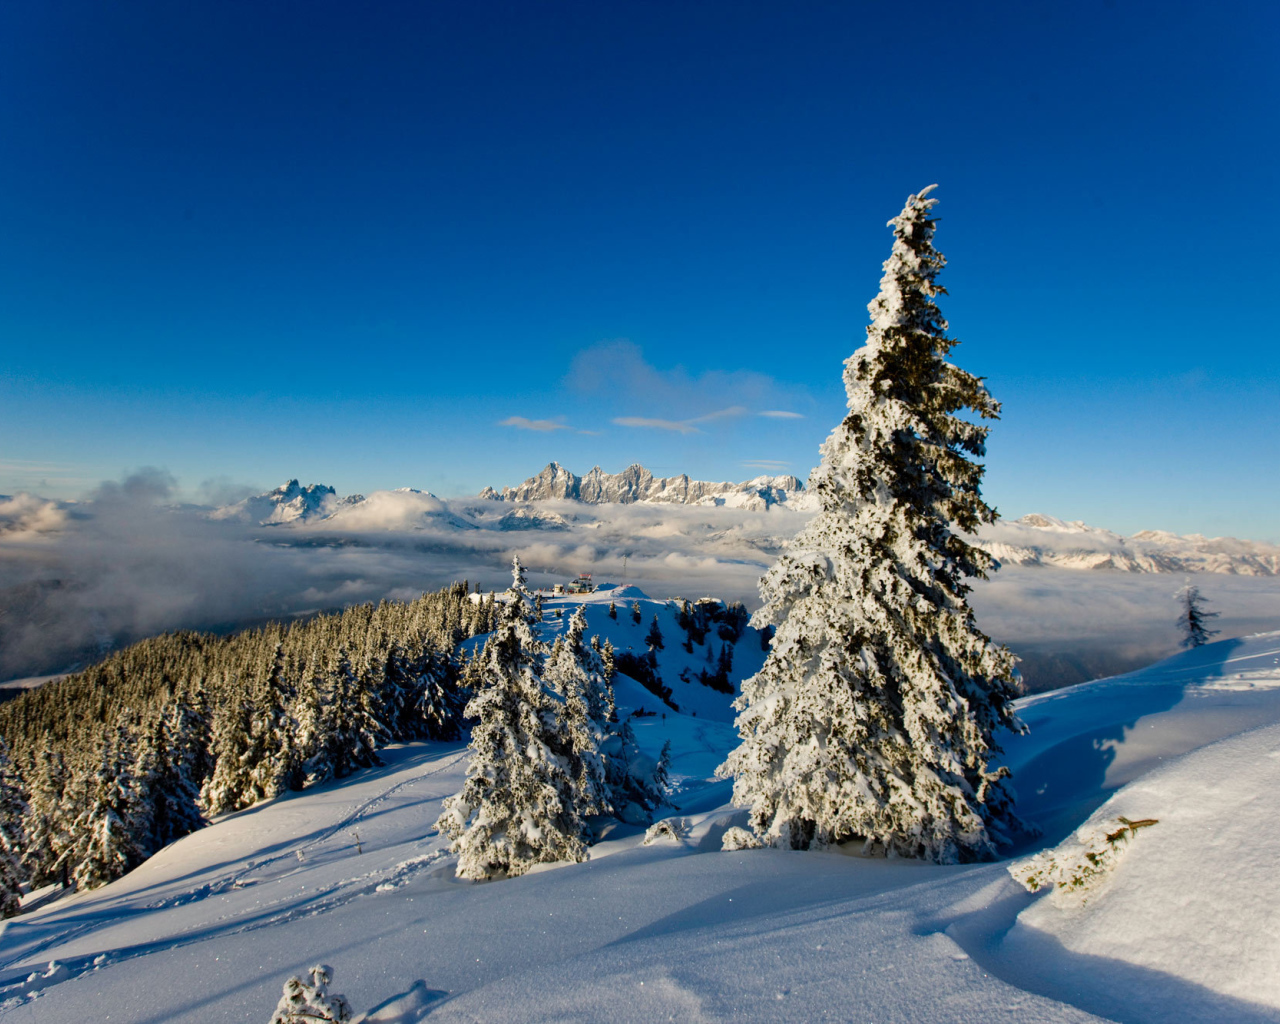 Заснеженная ель на горнолыжном курорте Шладминг, Австрия